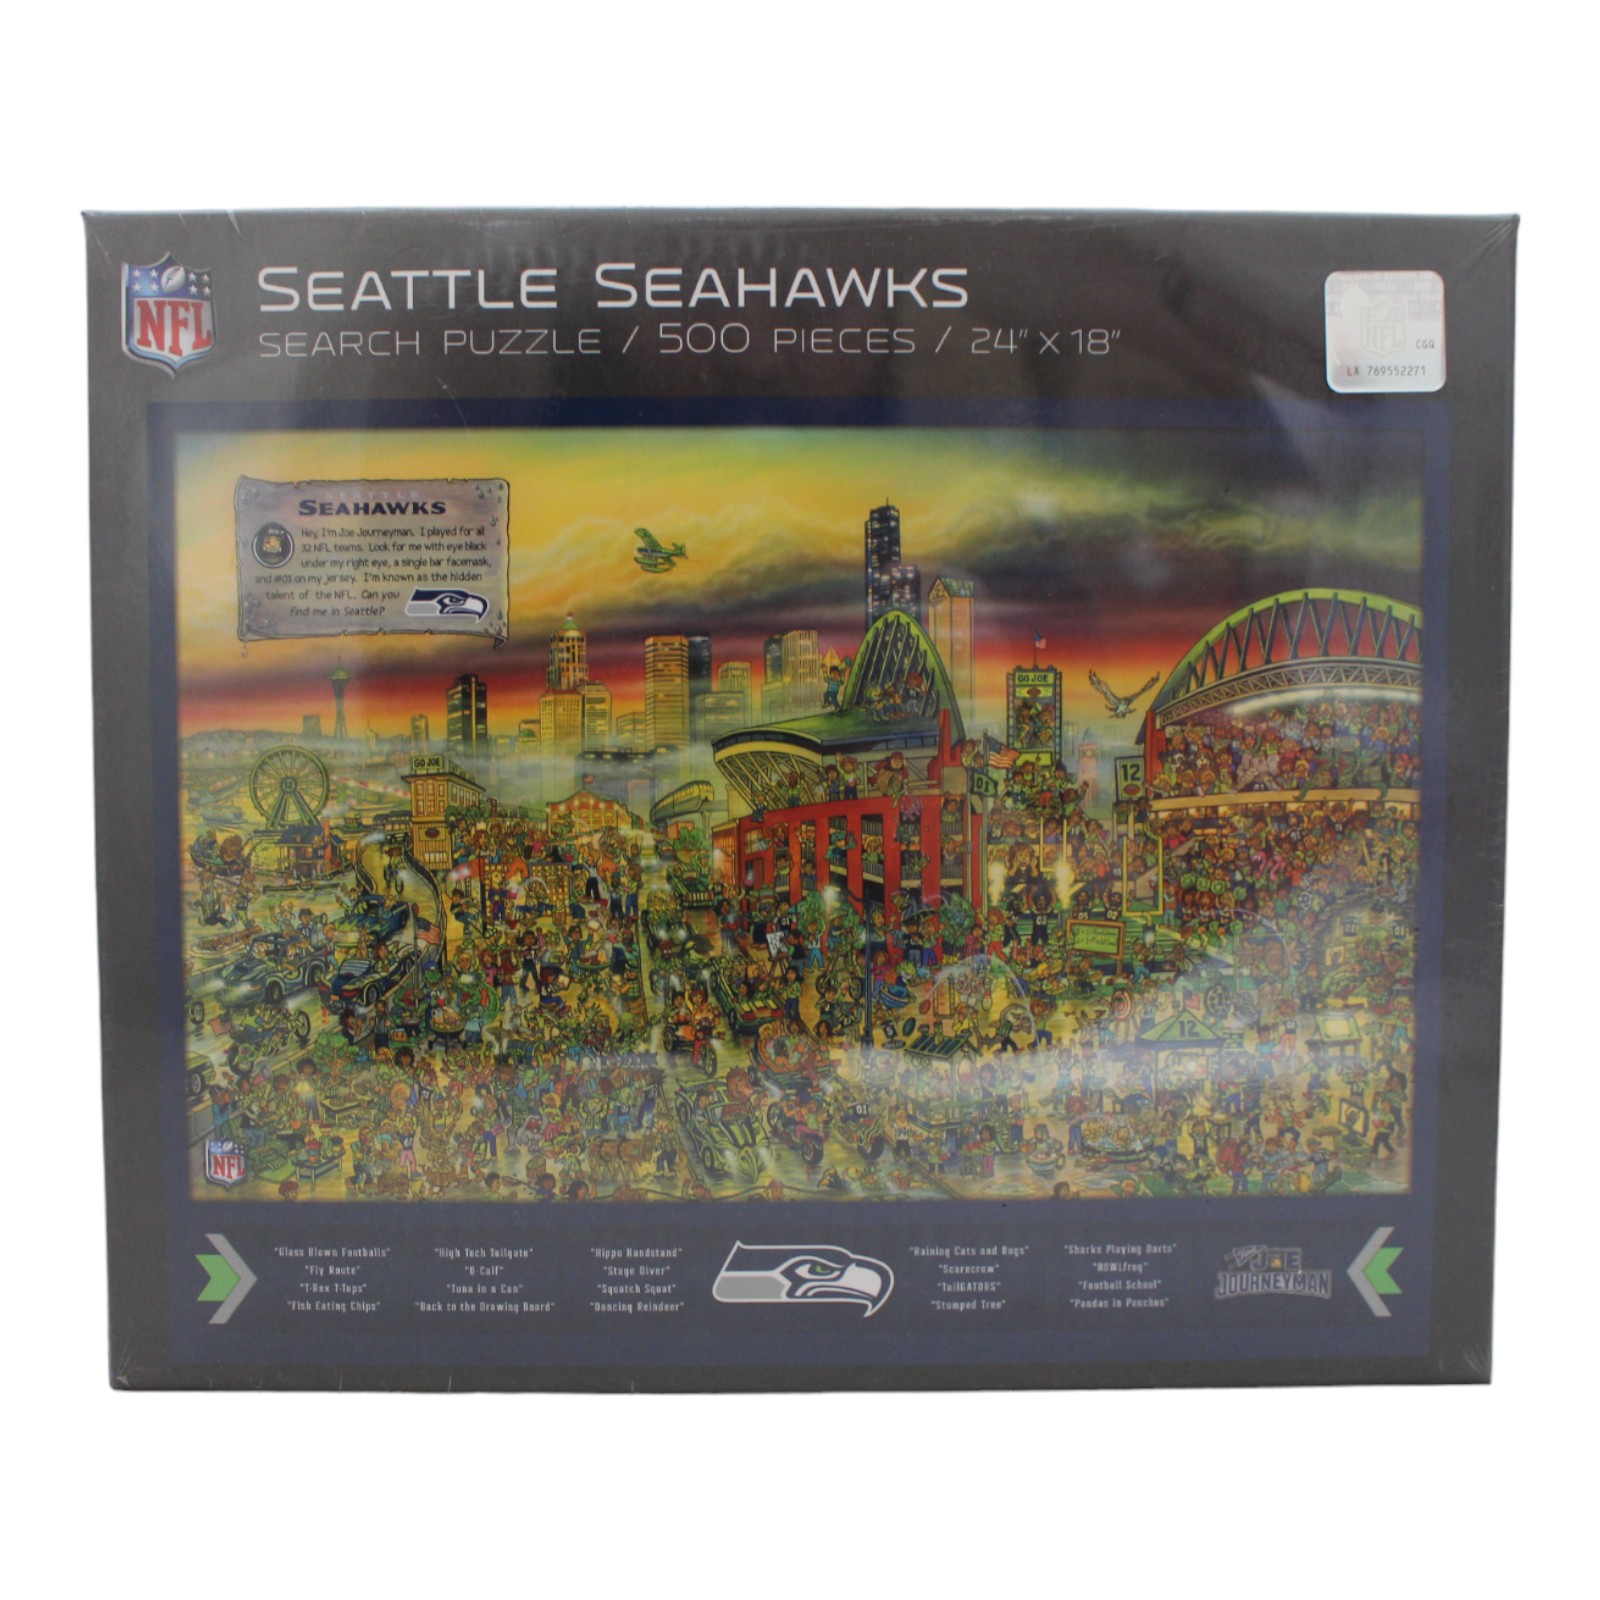 Seattle Seahawks 18"x24" YouTheFan 500 Piece Joe Journeyman Puzzle